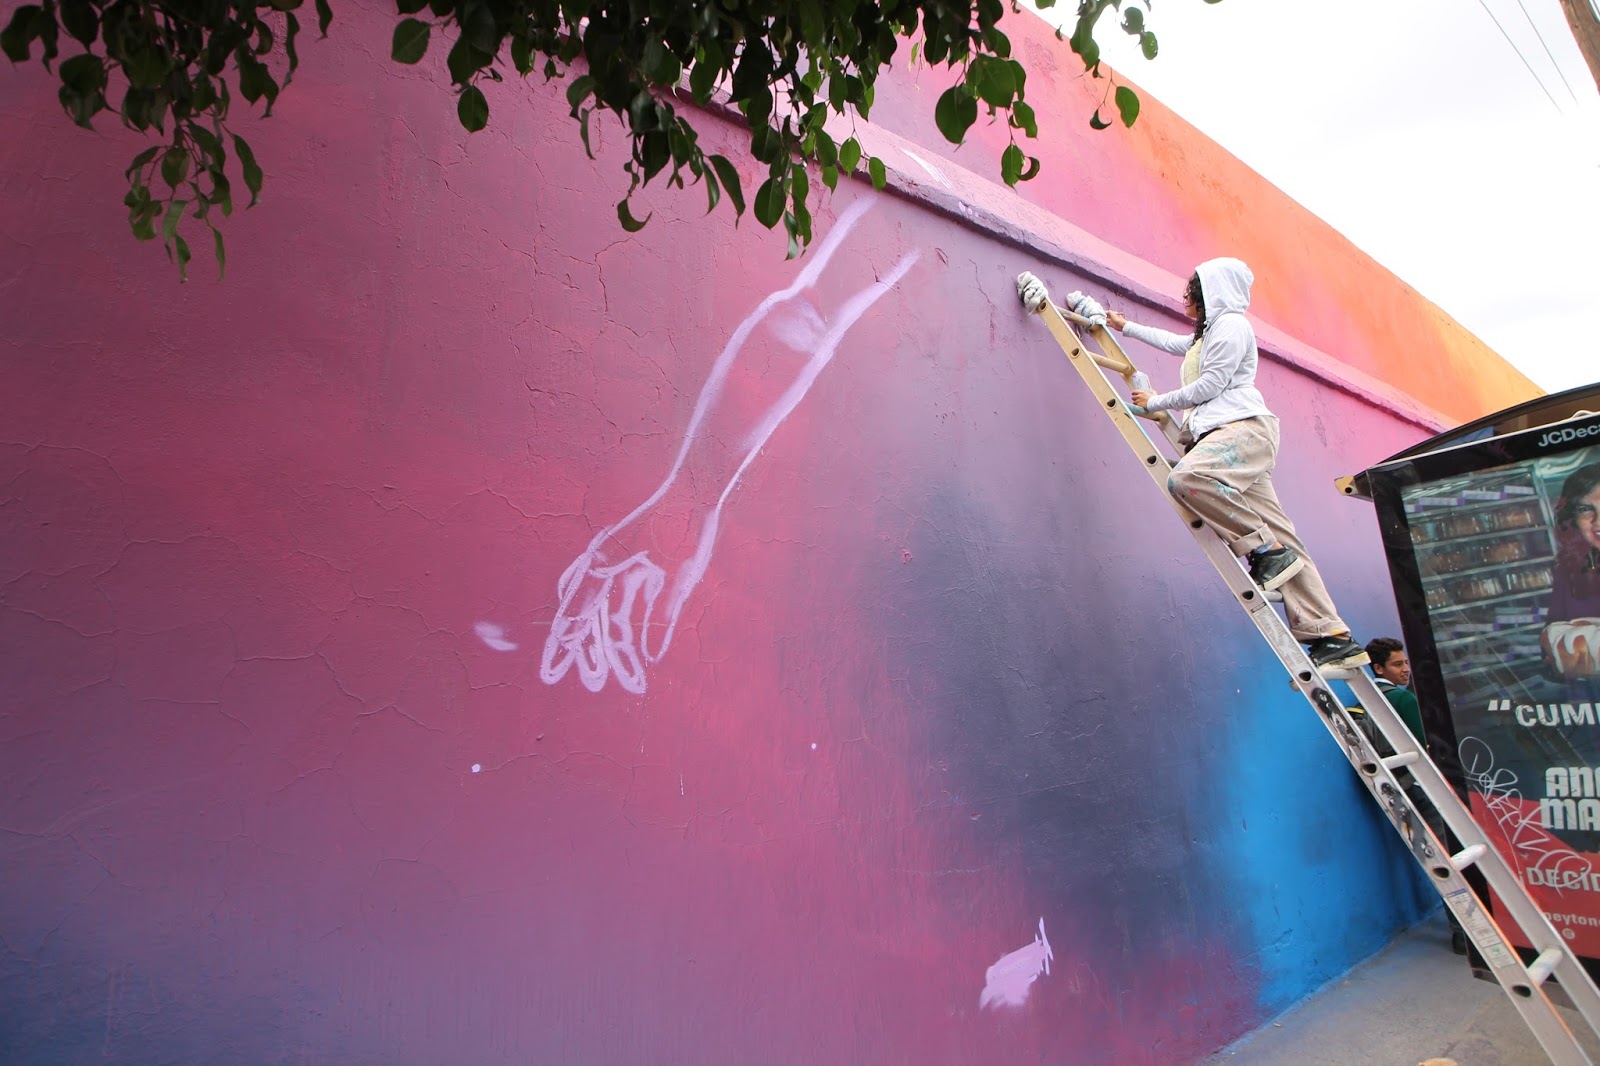 Mural And Graffiti Art R I P Graffiti And Hip Hop